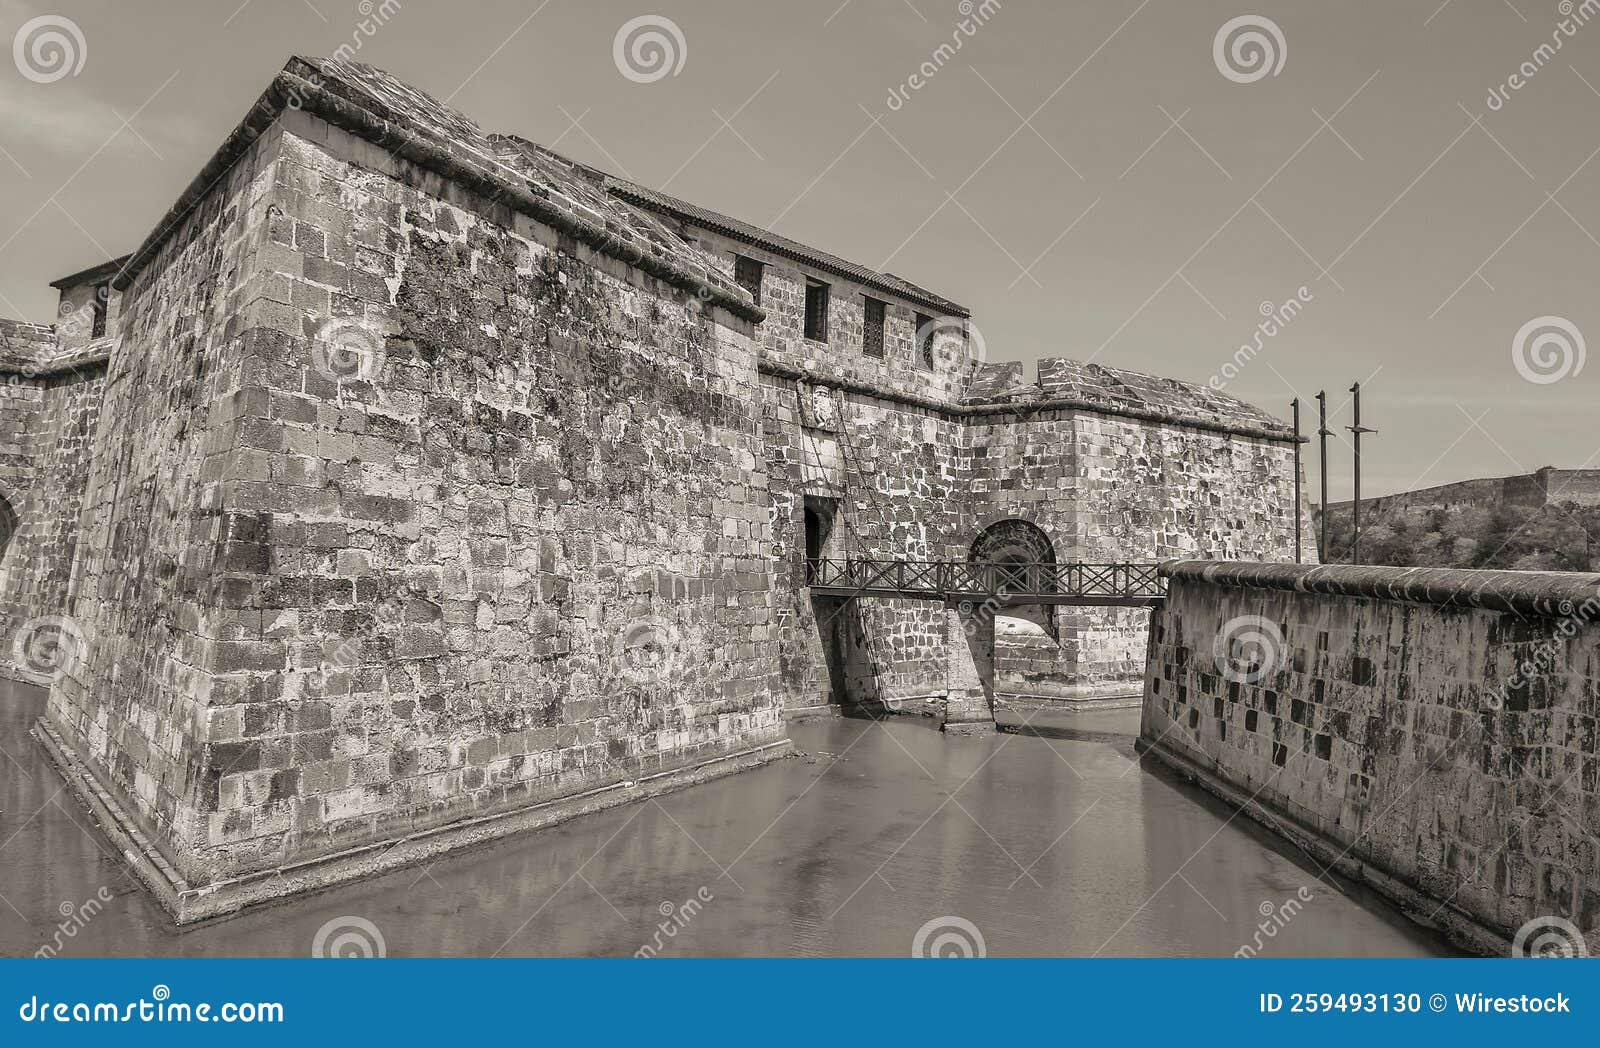 grayscale of la real fuerza castle in havana, cuba